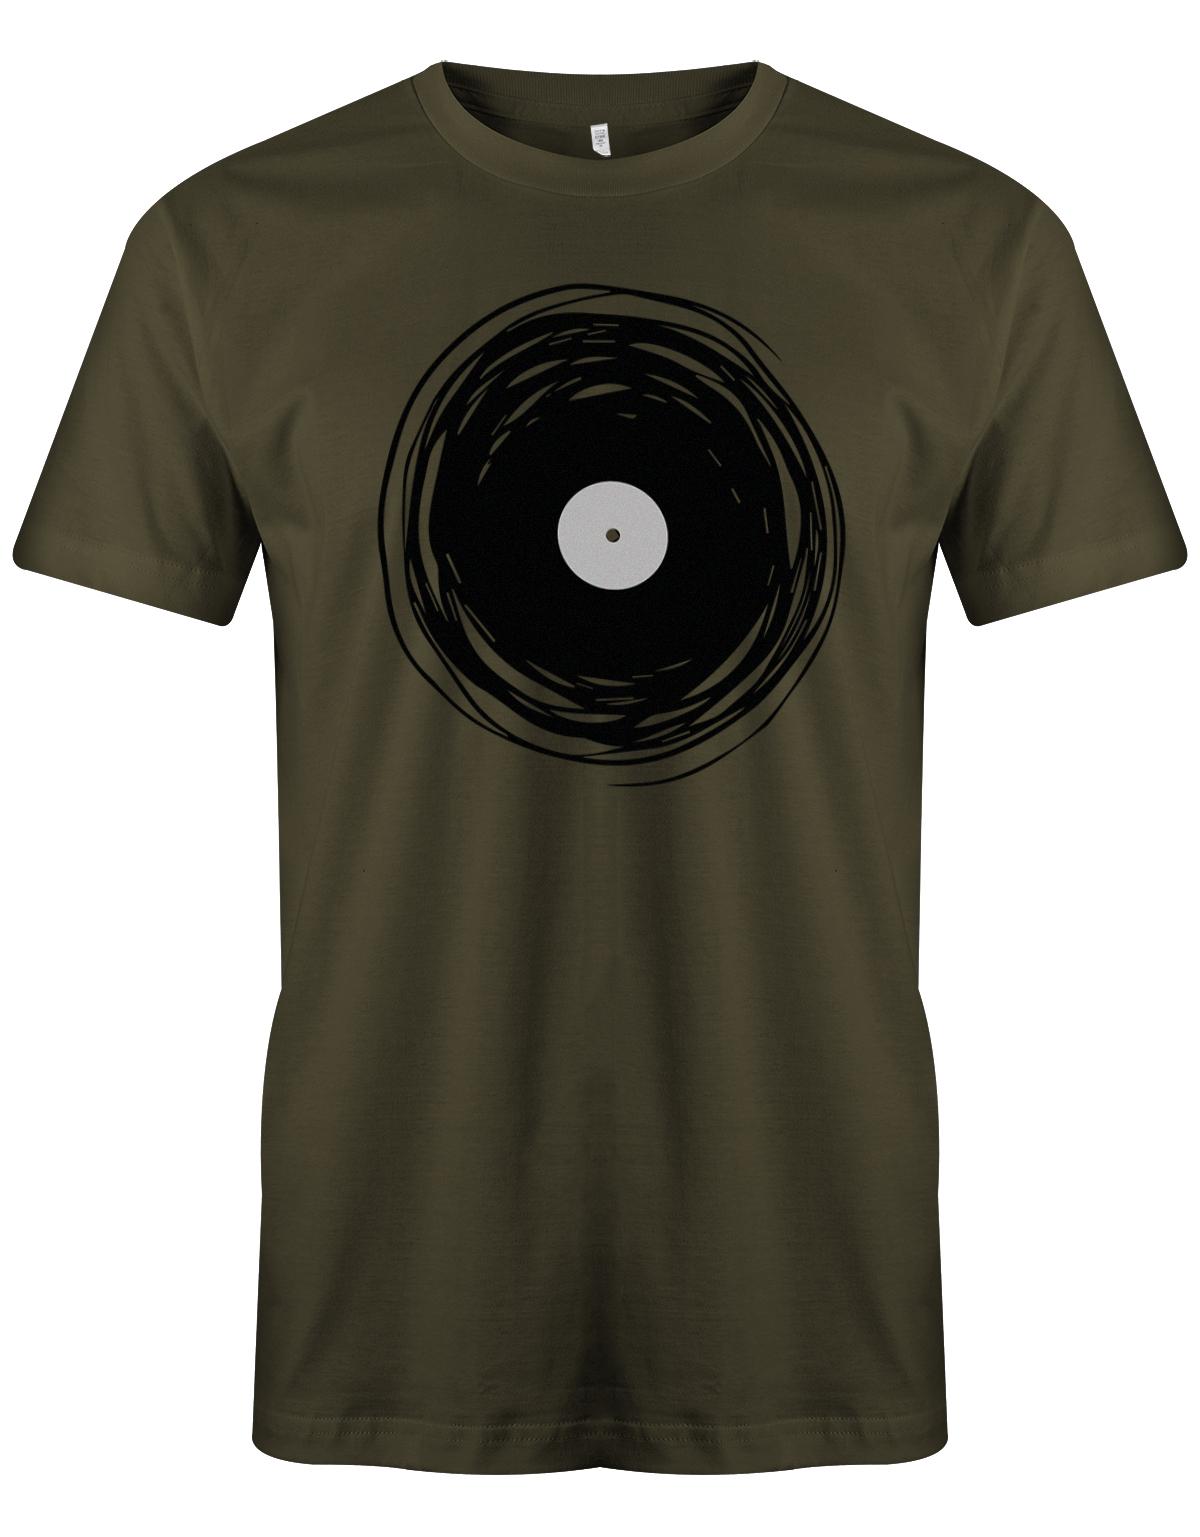 SChallplatte-Herren-Shirt-Army